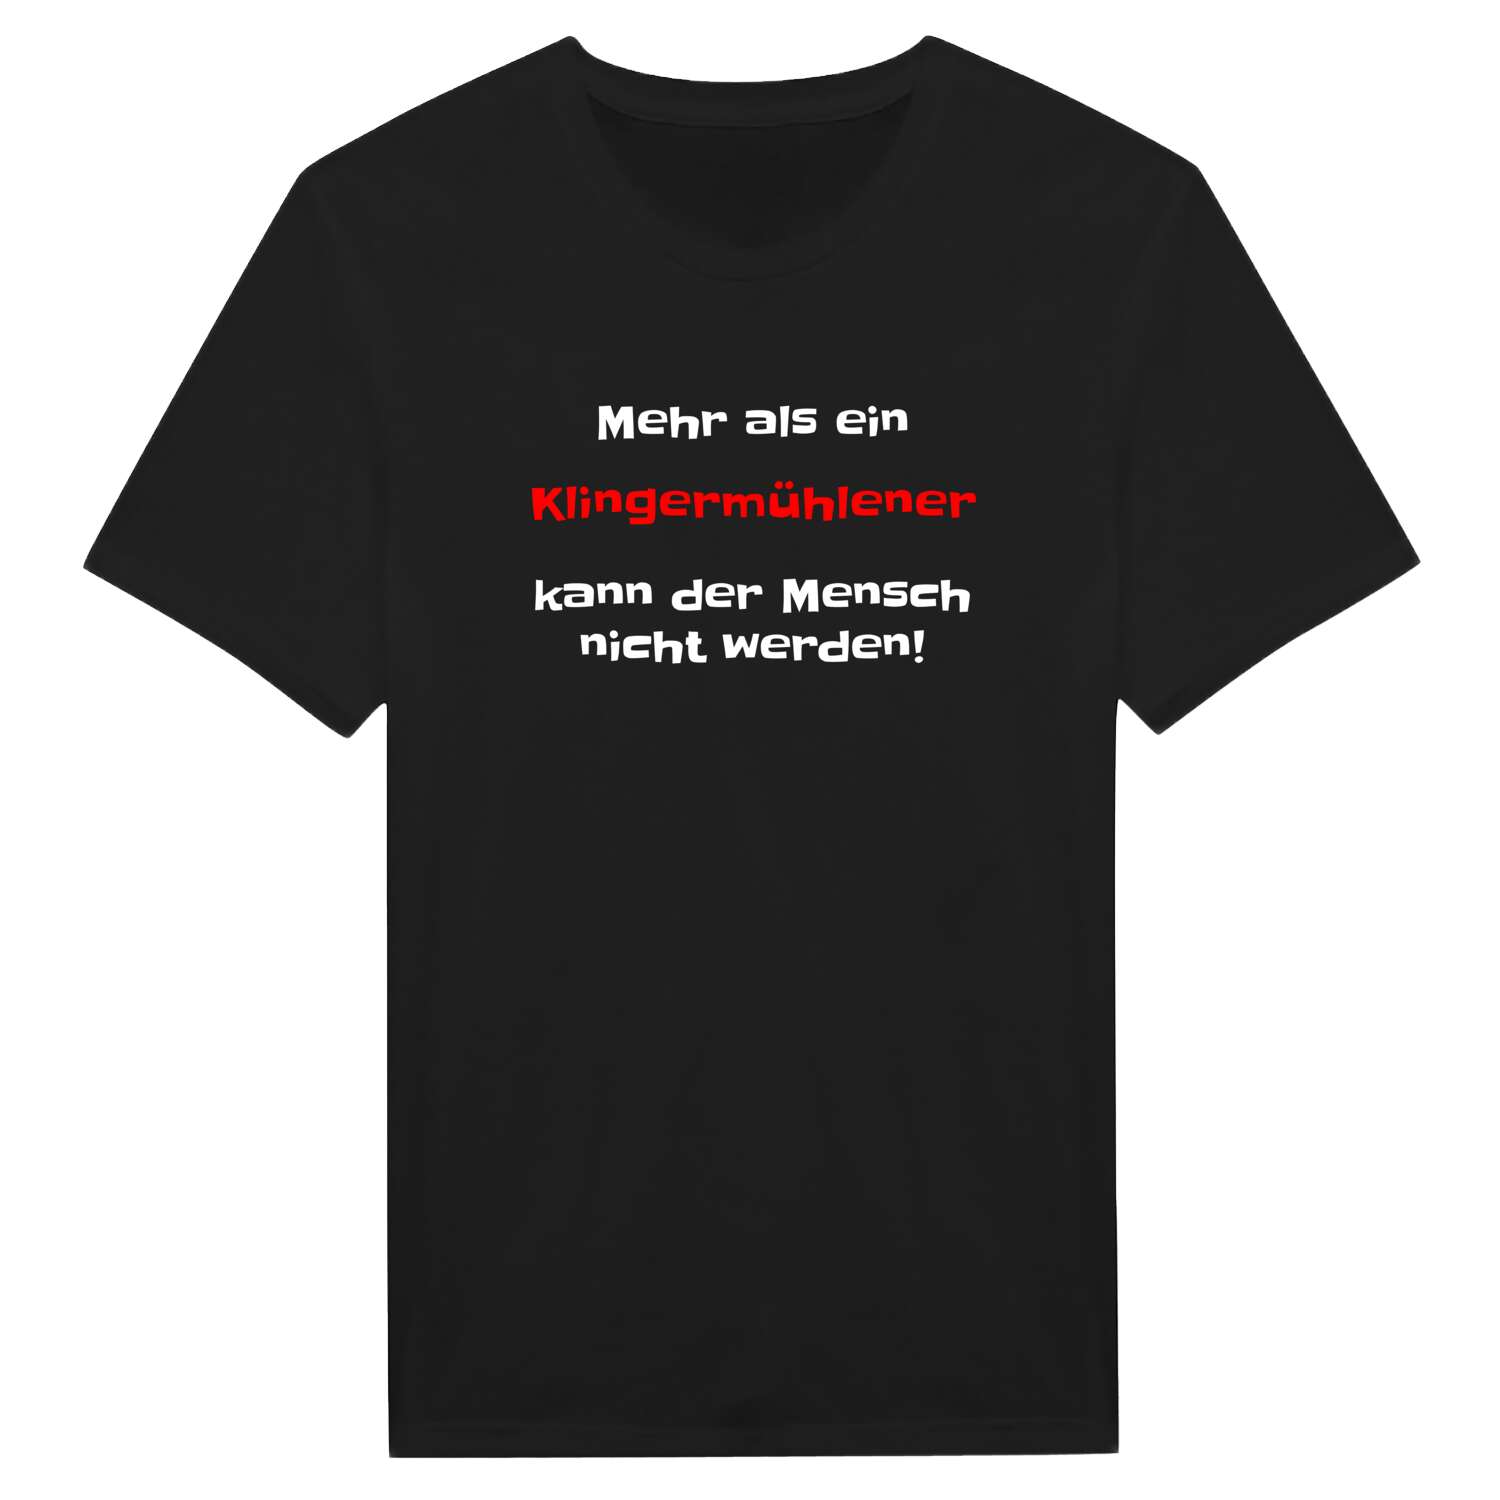 Klingermühle T-Shirt »Mehr als ein«